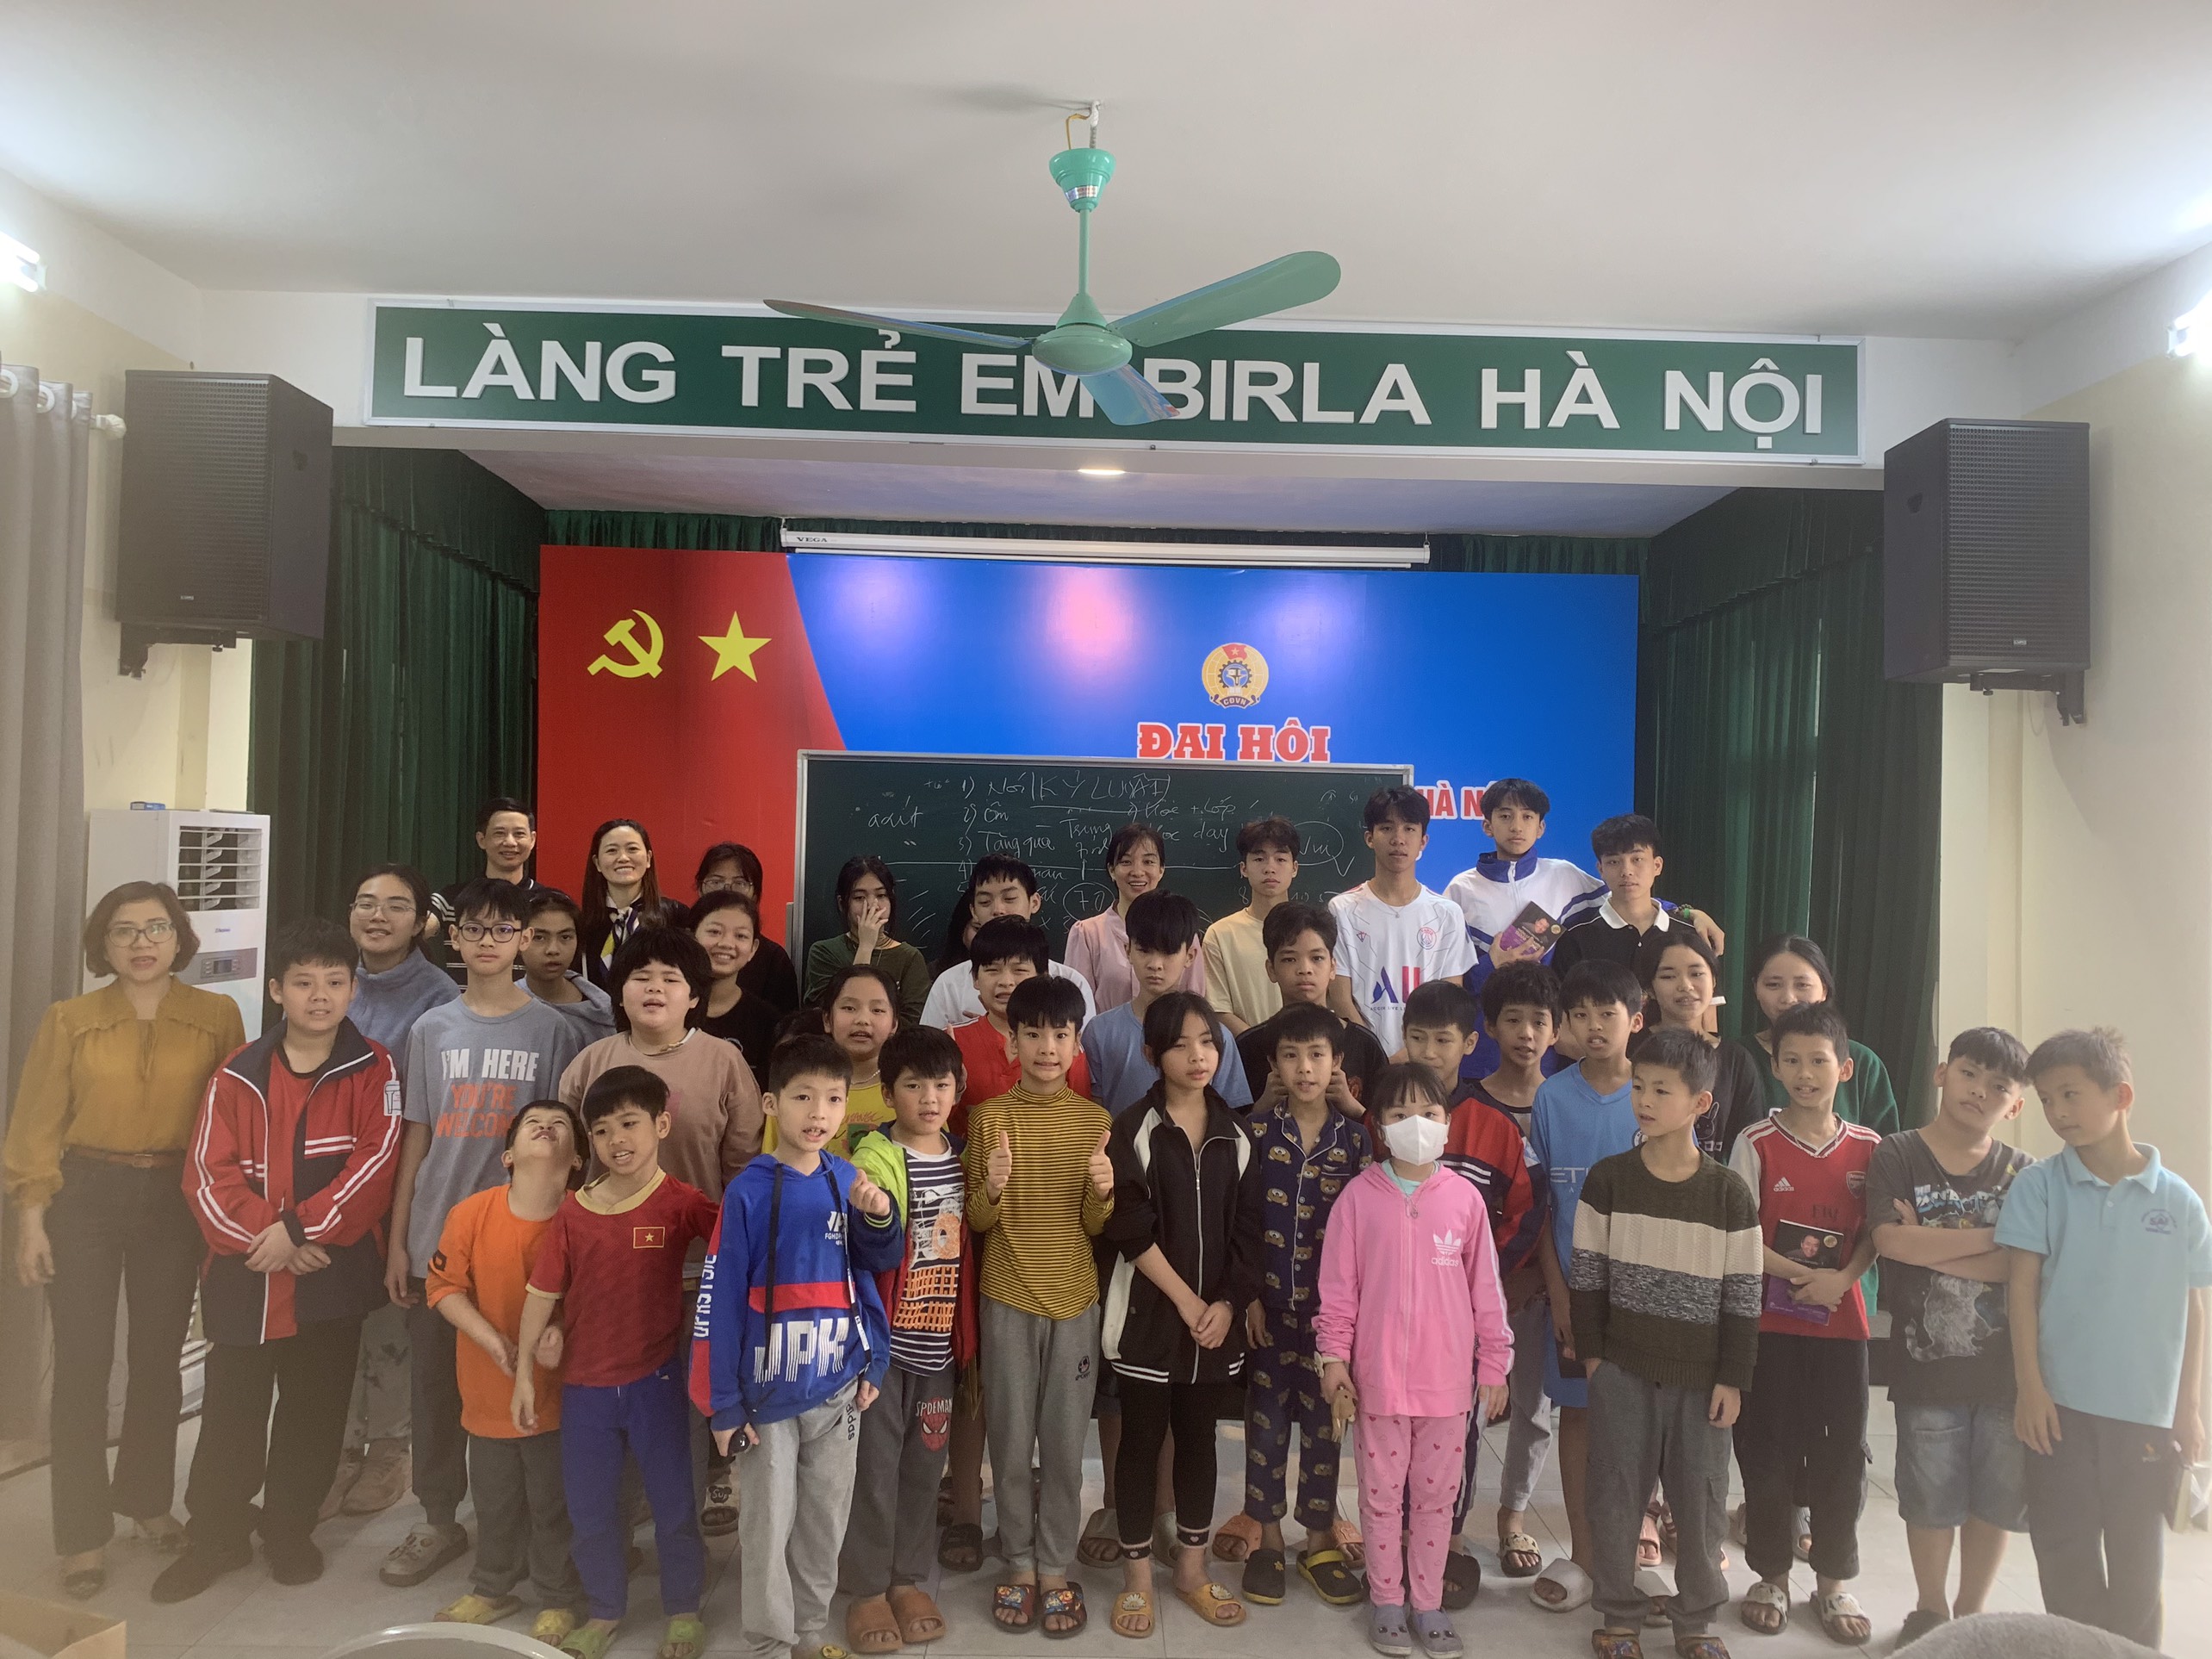 Chương trình kích hoạt trí thông minh cảm xúc EQ và tặng sách trẻ em mồ côi làng Birla